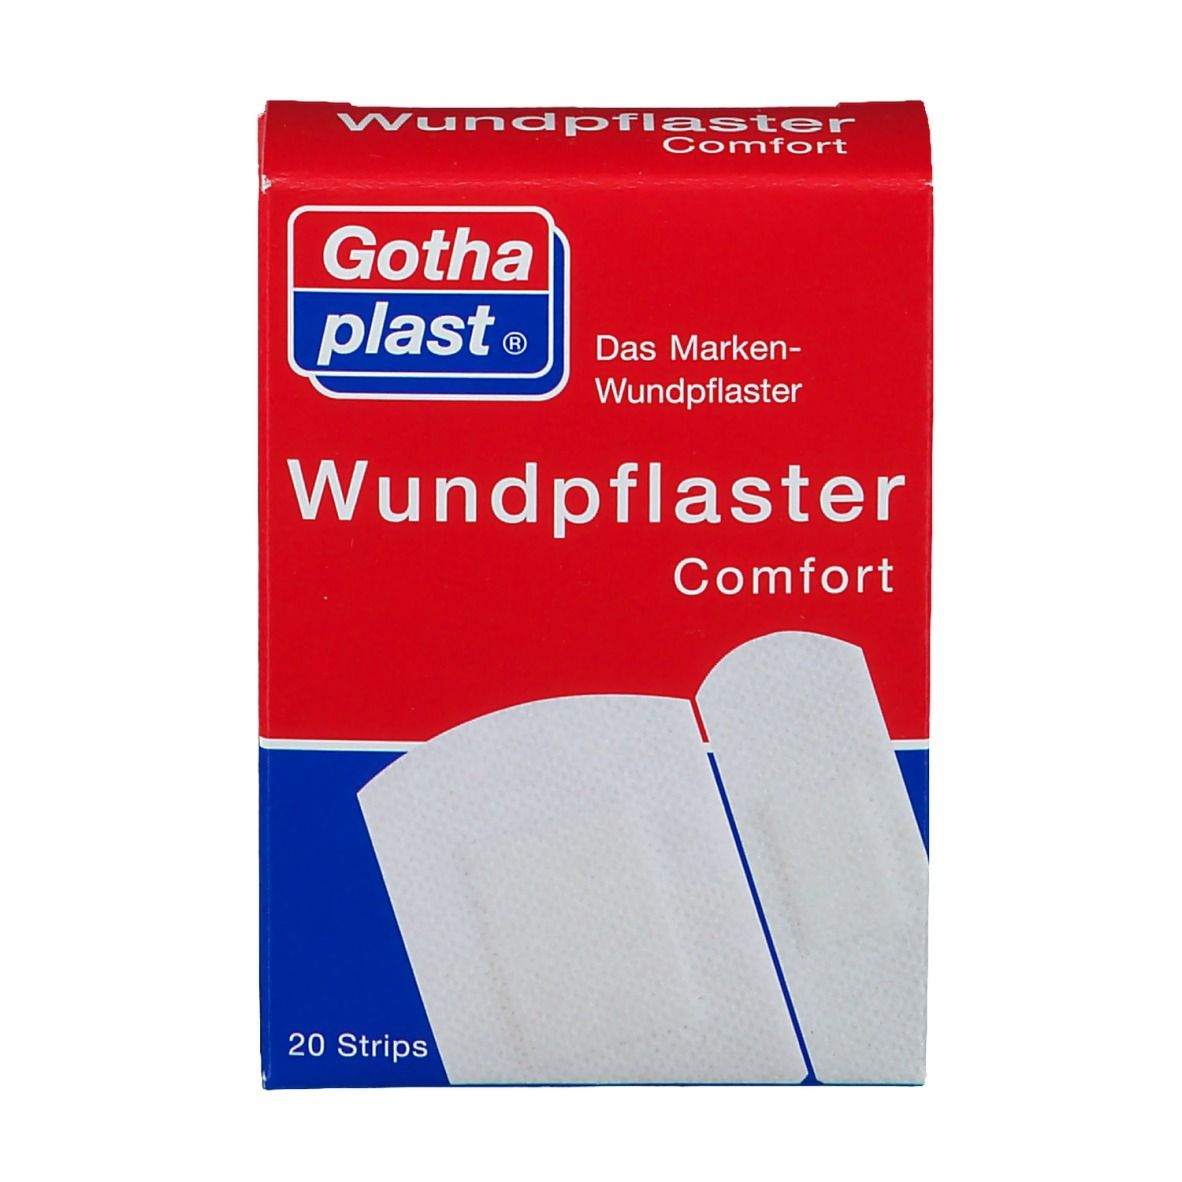 Gothaplast® Wundpflaster Comfort 2 Größen